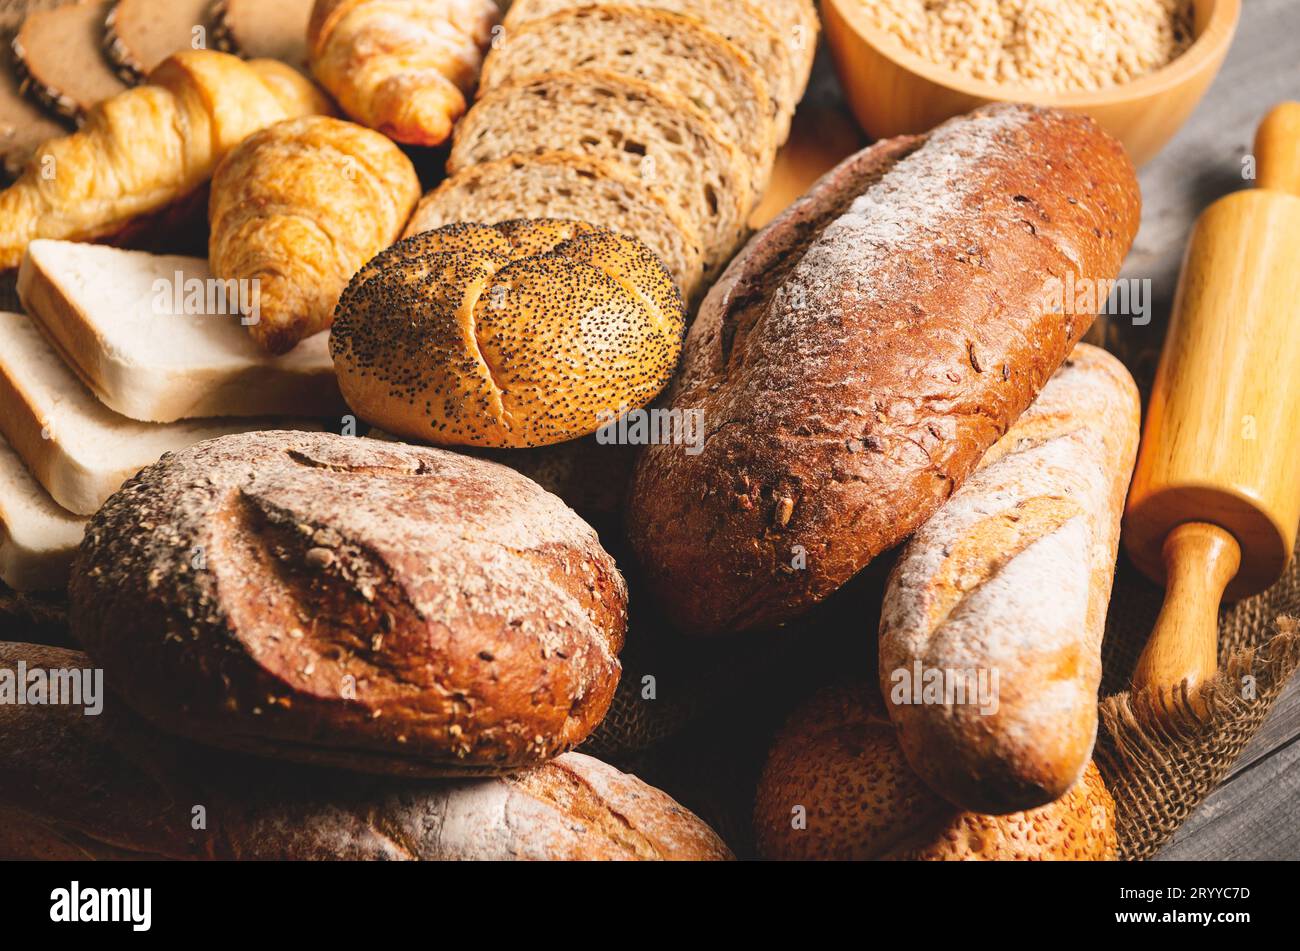 Différents types de pain avec nutrition grains entiers sur fond en bois. Nourriture et boulangerie dans le concept de cuisine. Délicieux petit déjeuner Banque D'Images